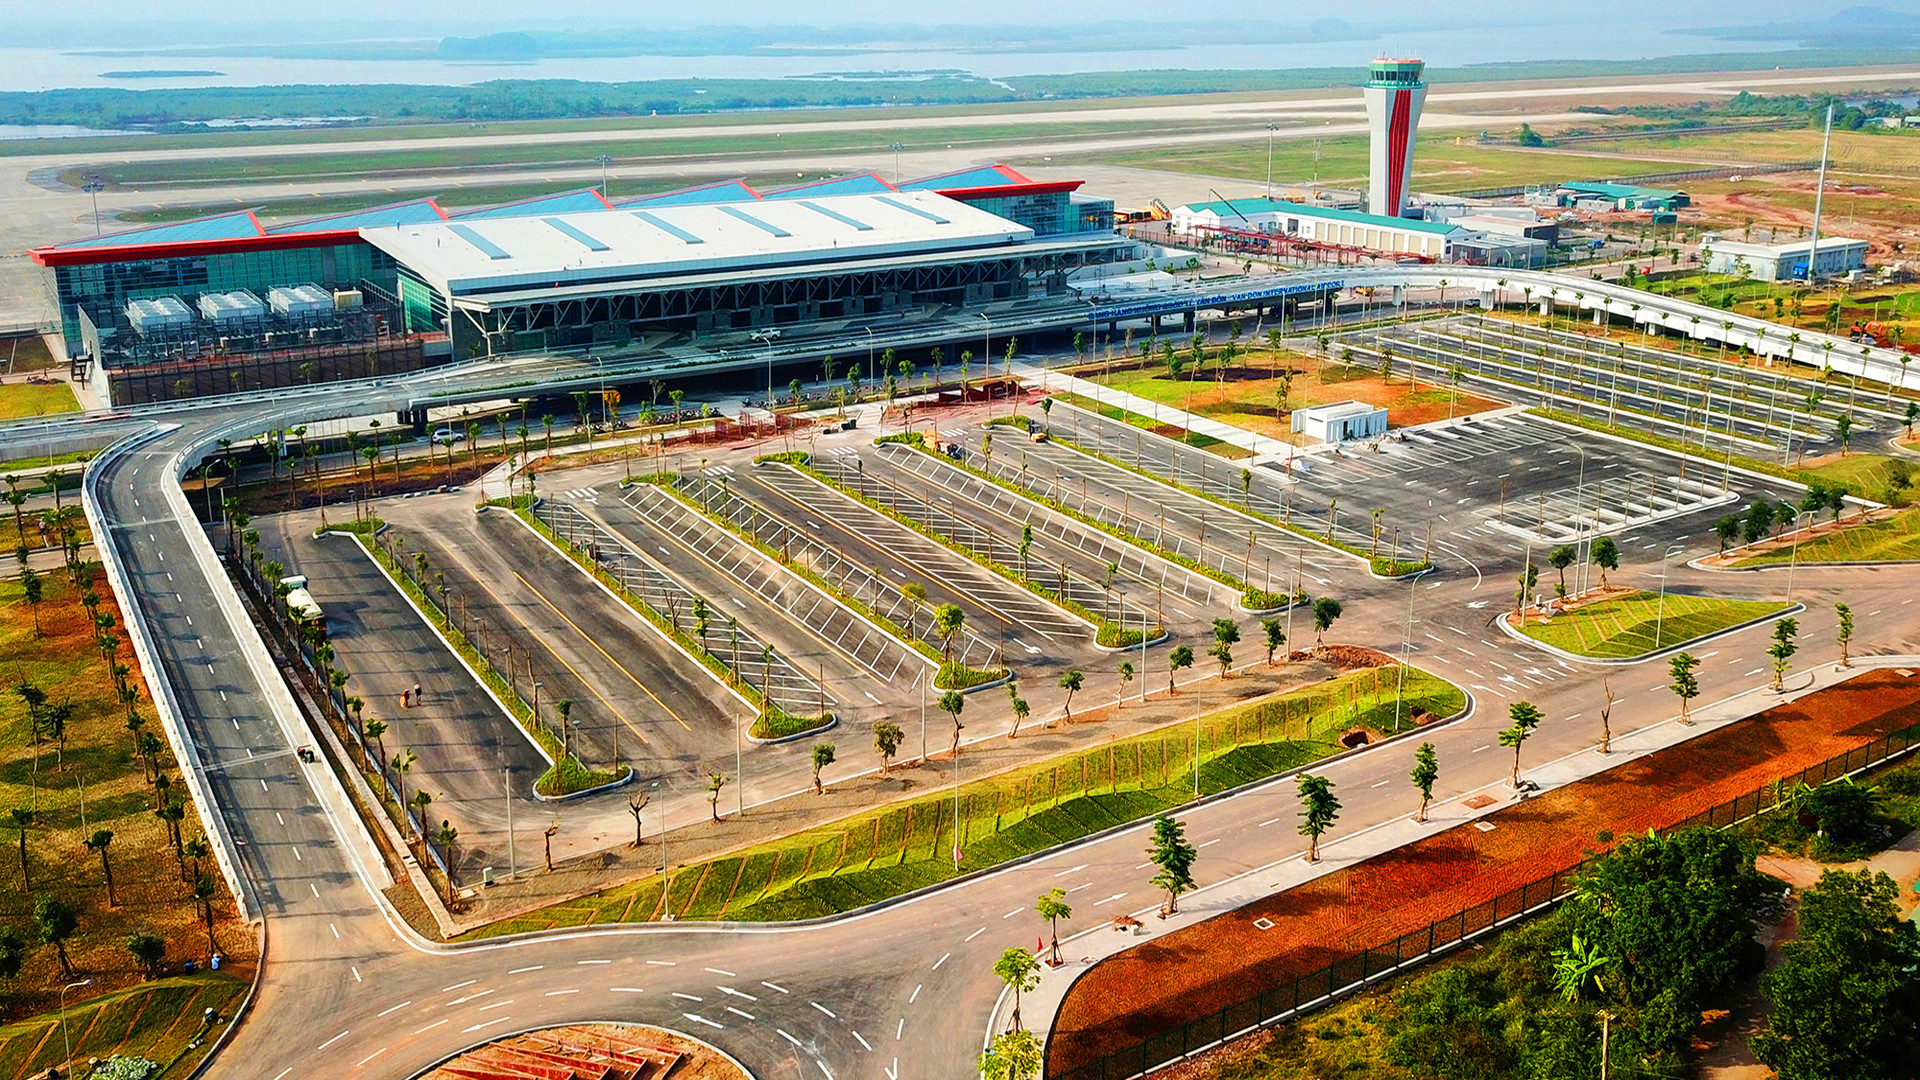 Bamboo Airways mở đường bay tới Vân Đồn ngay trước Tết